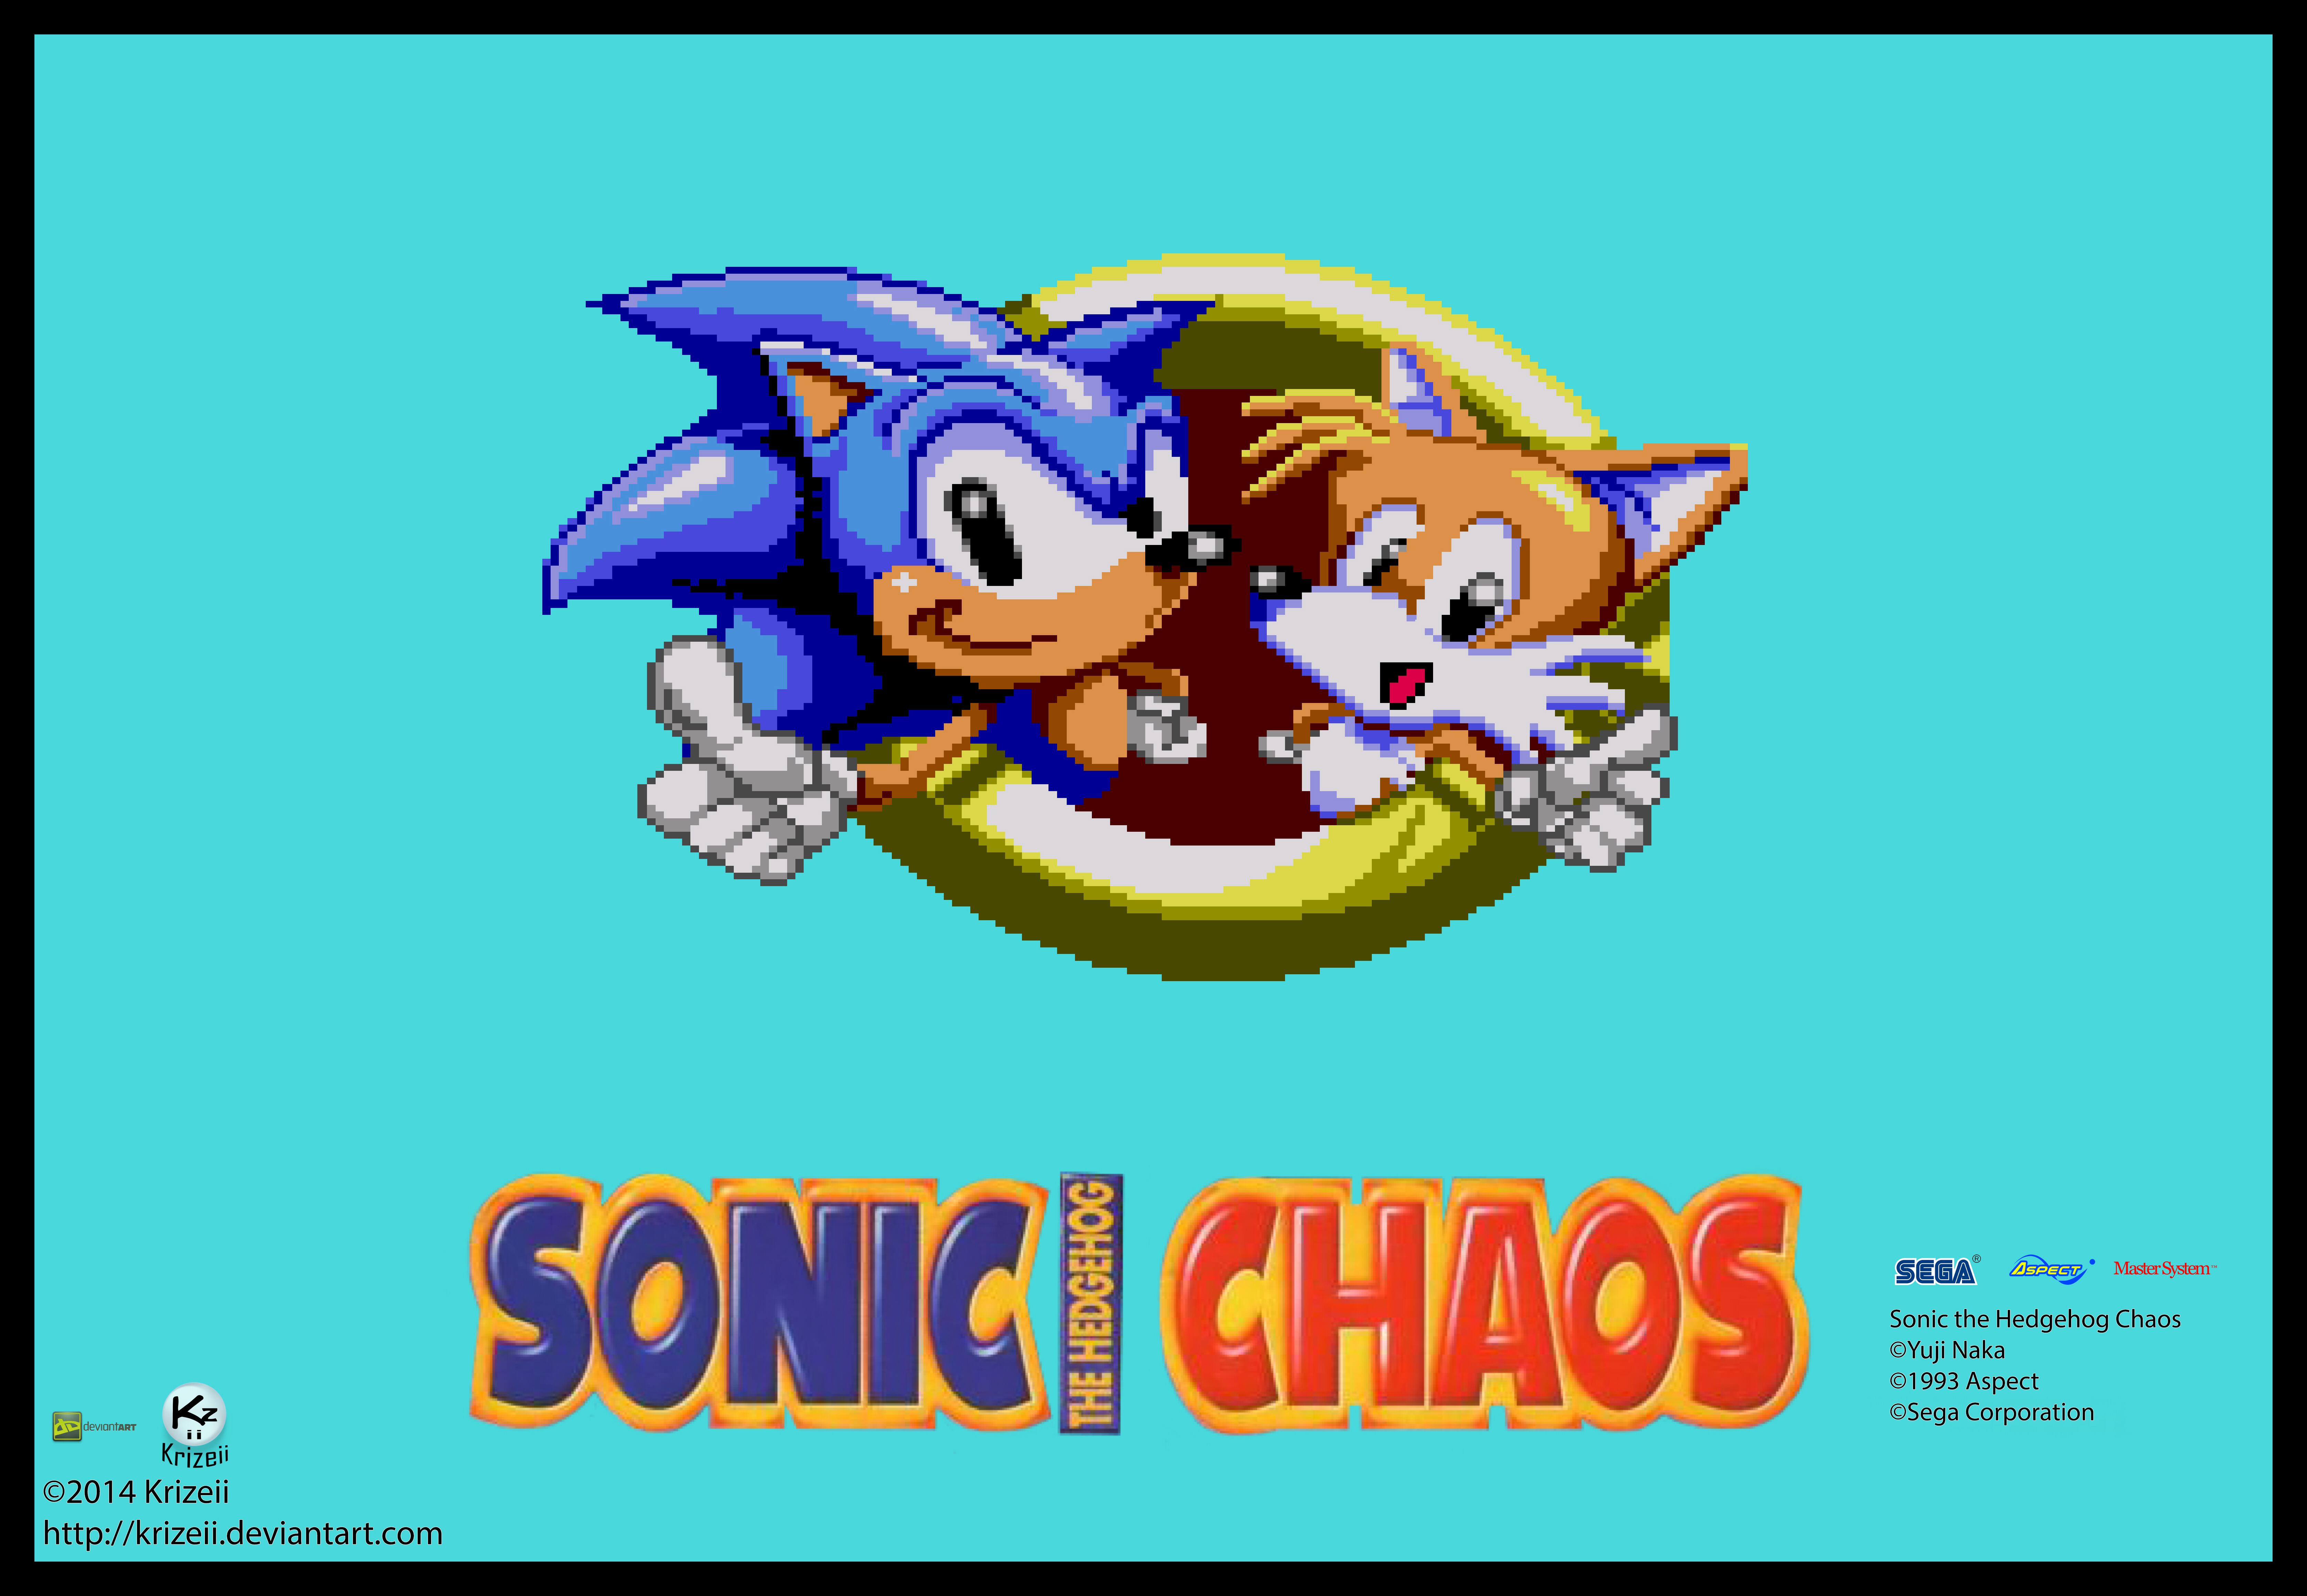 Sonic Chaos HD Title Screen WIP by sonicgen91 on DeviantArt